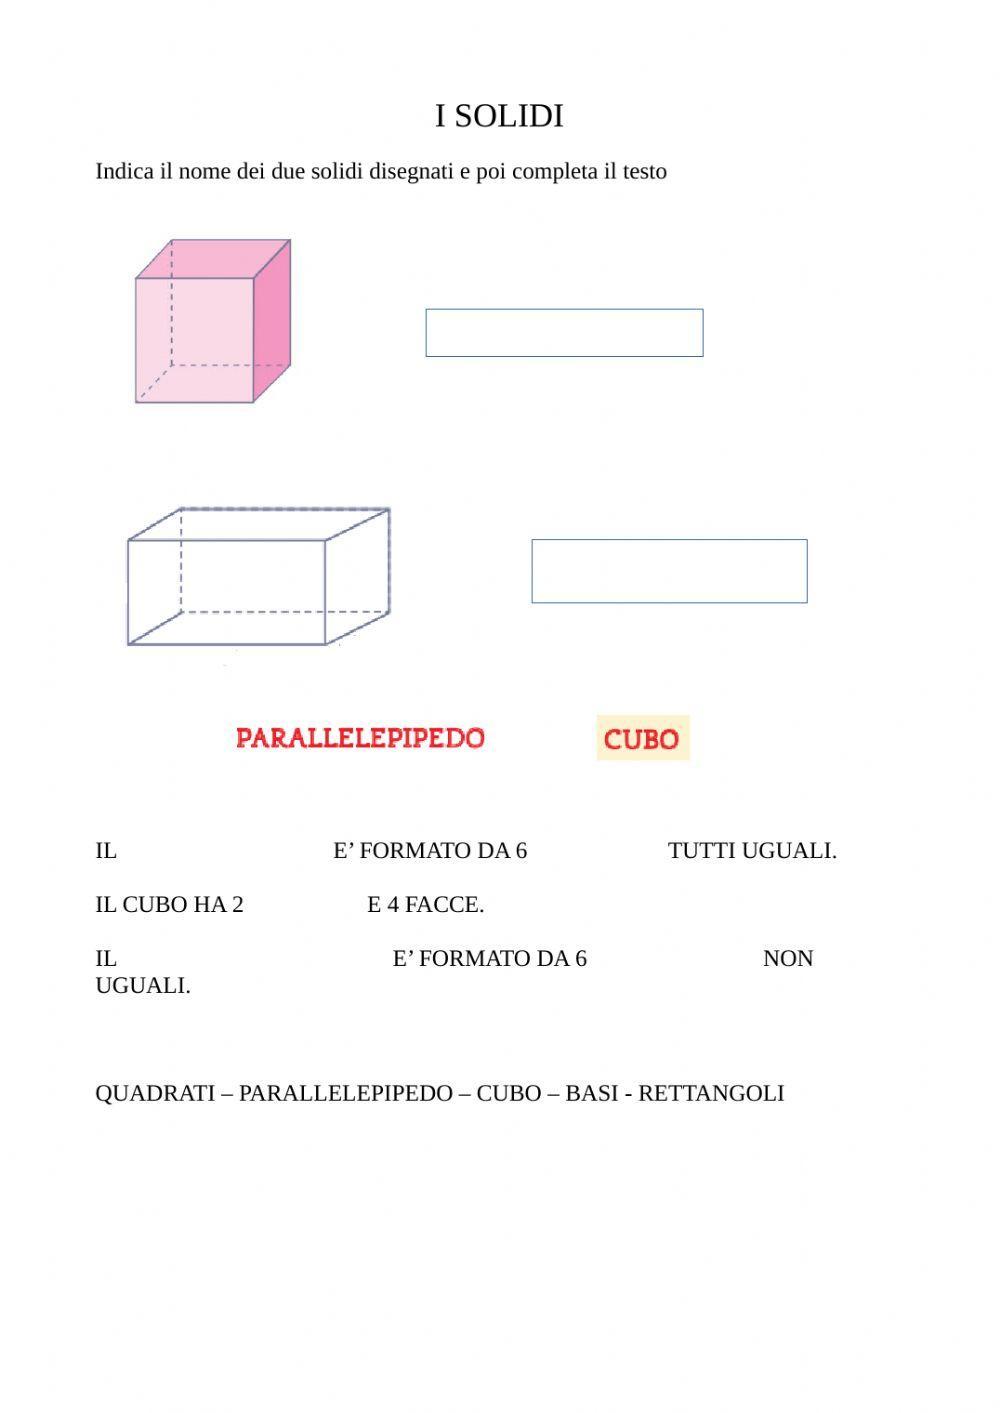 I solidi : cubo e parallelepipedo